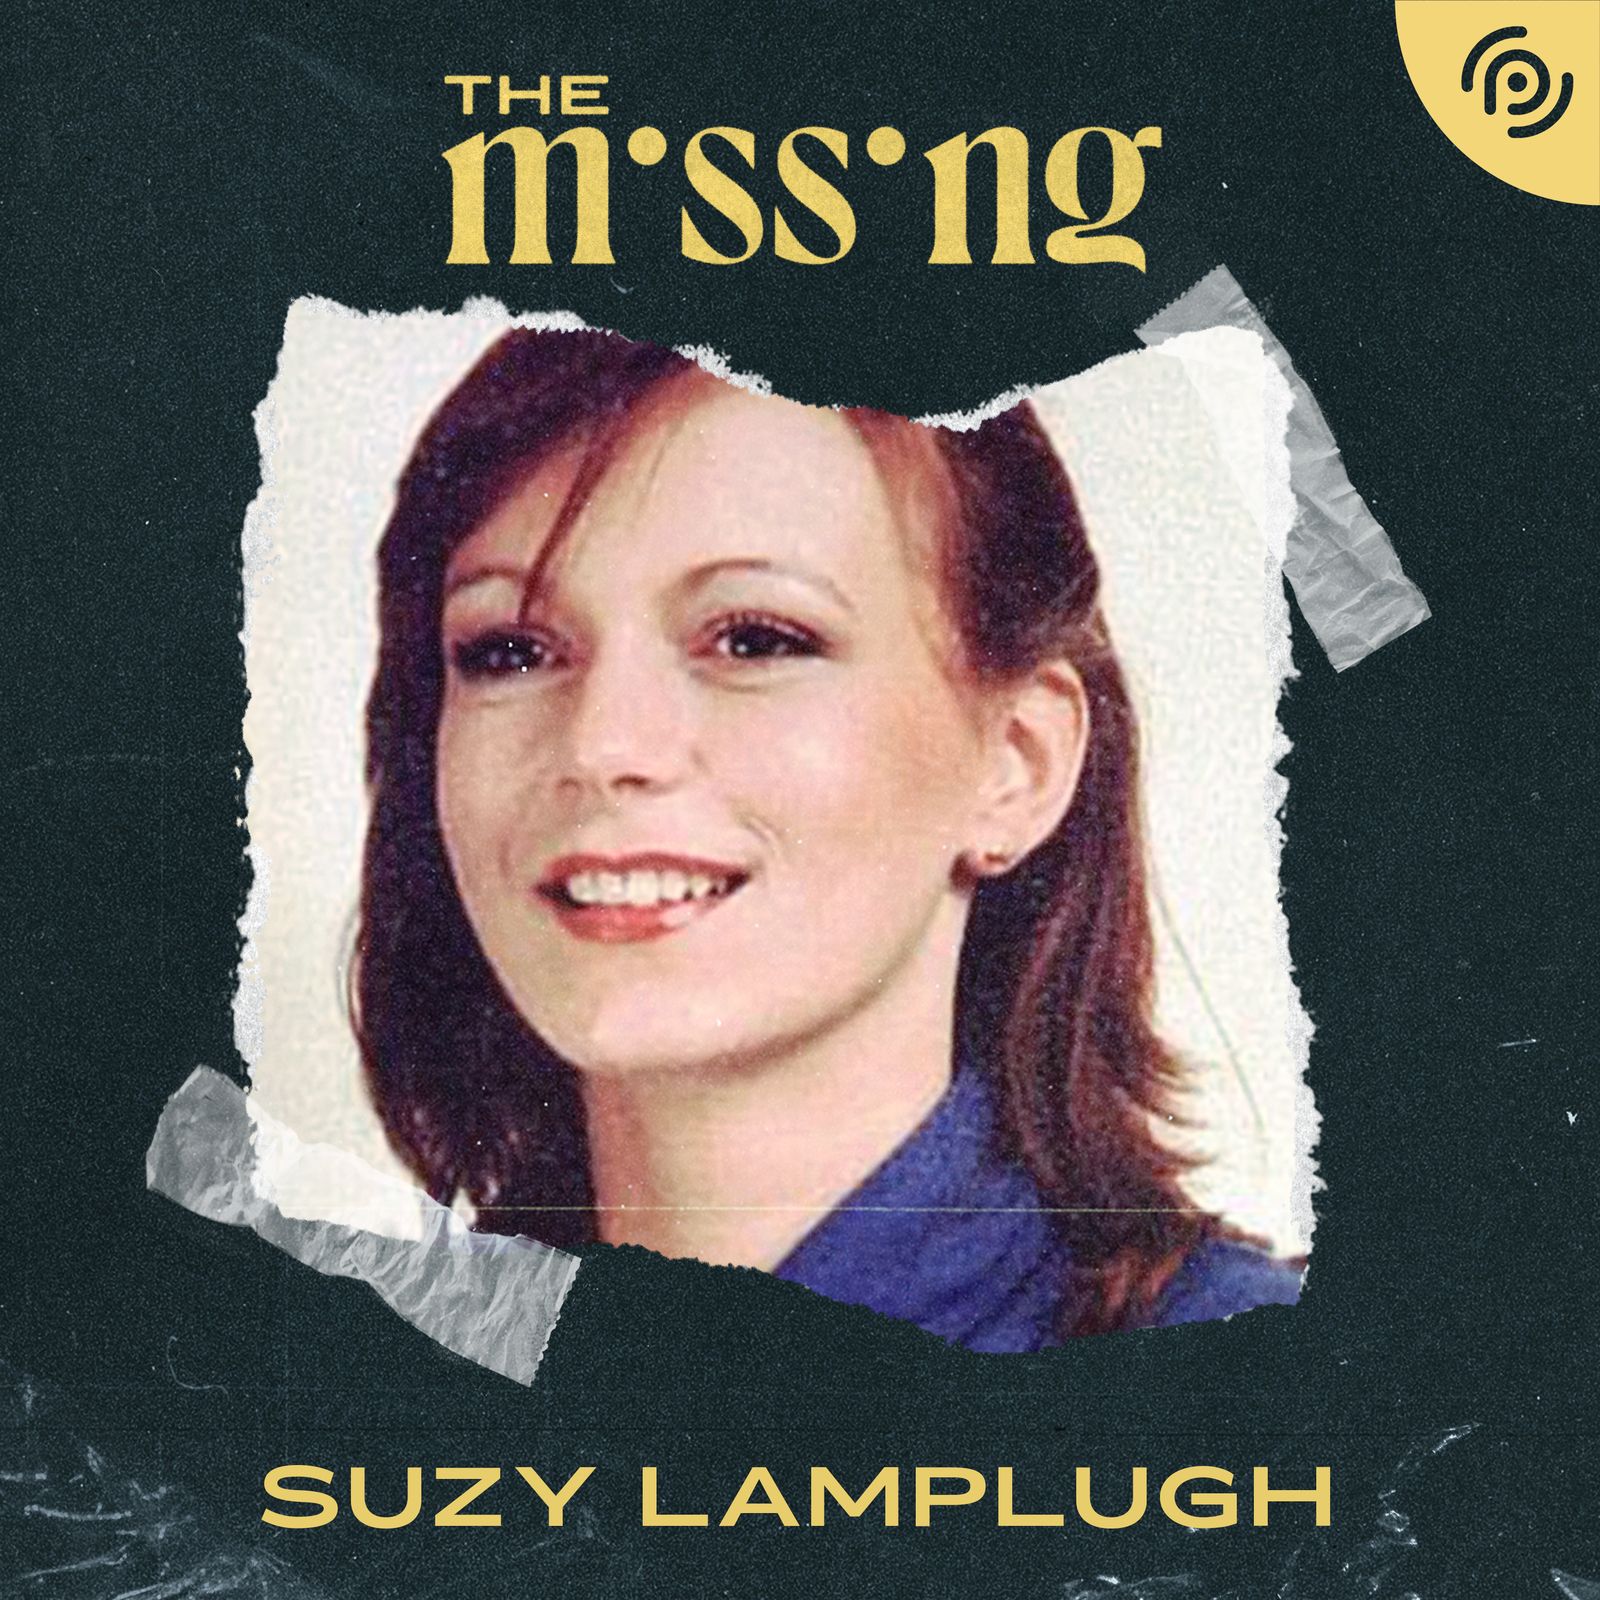 Suzy Lamplugh